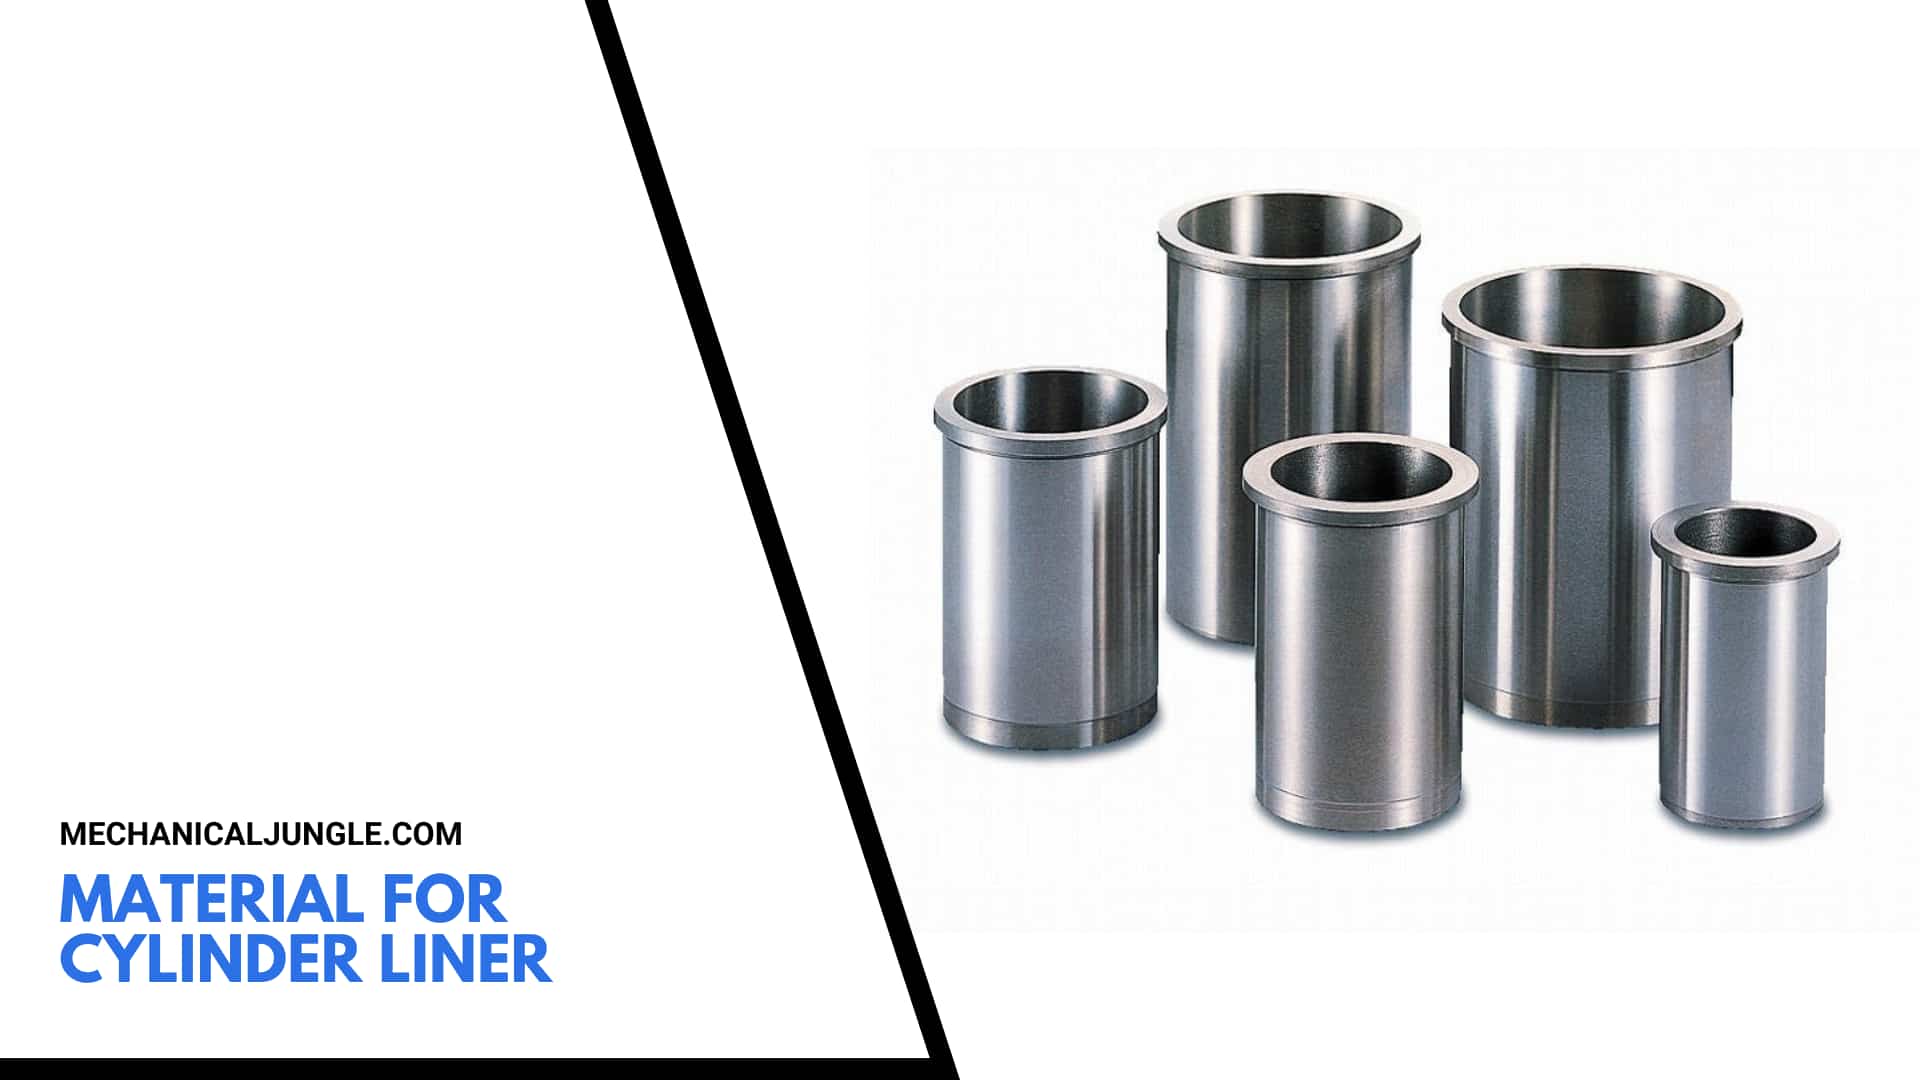 Material for Cylinder Liner